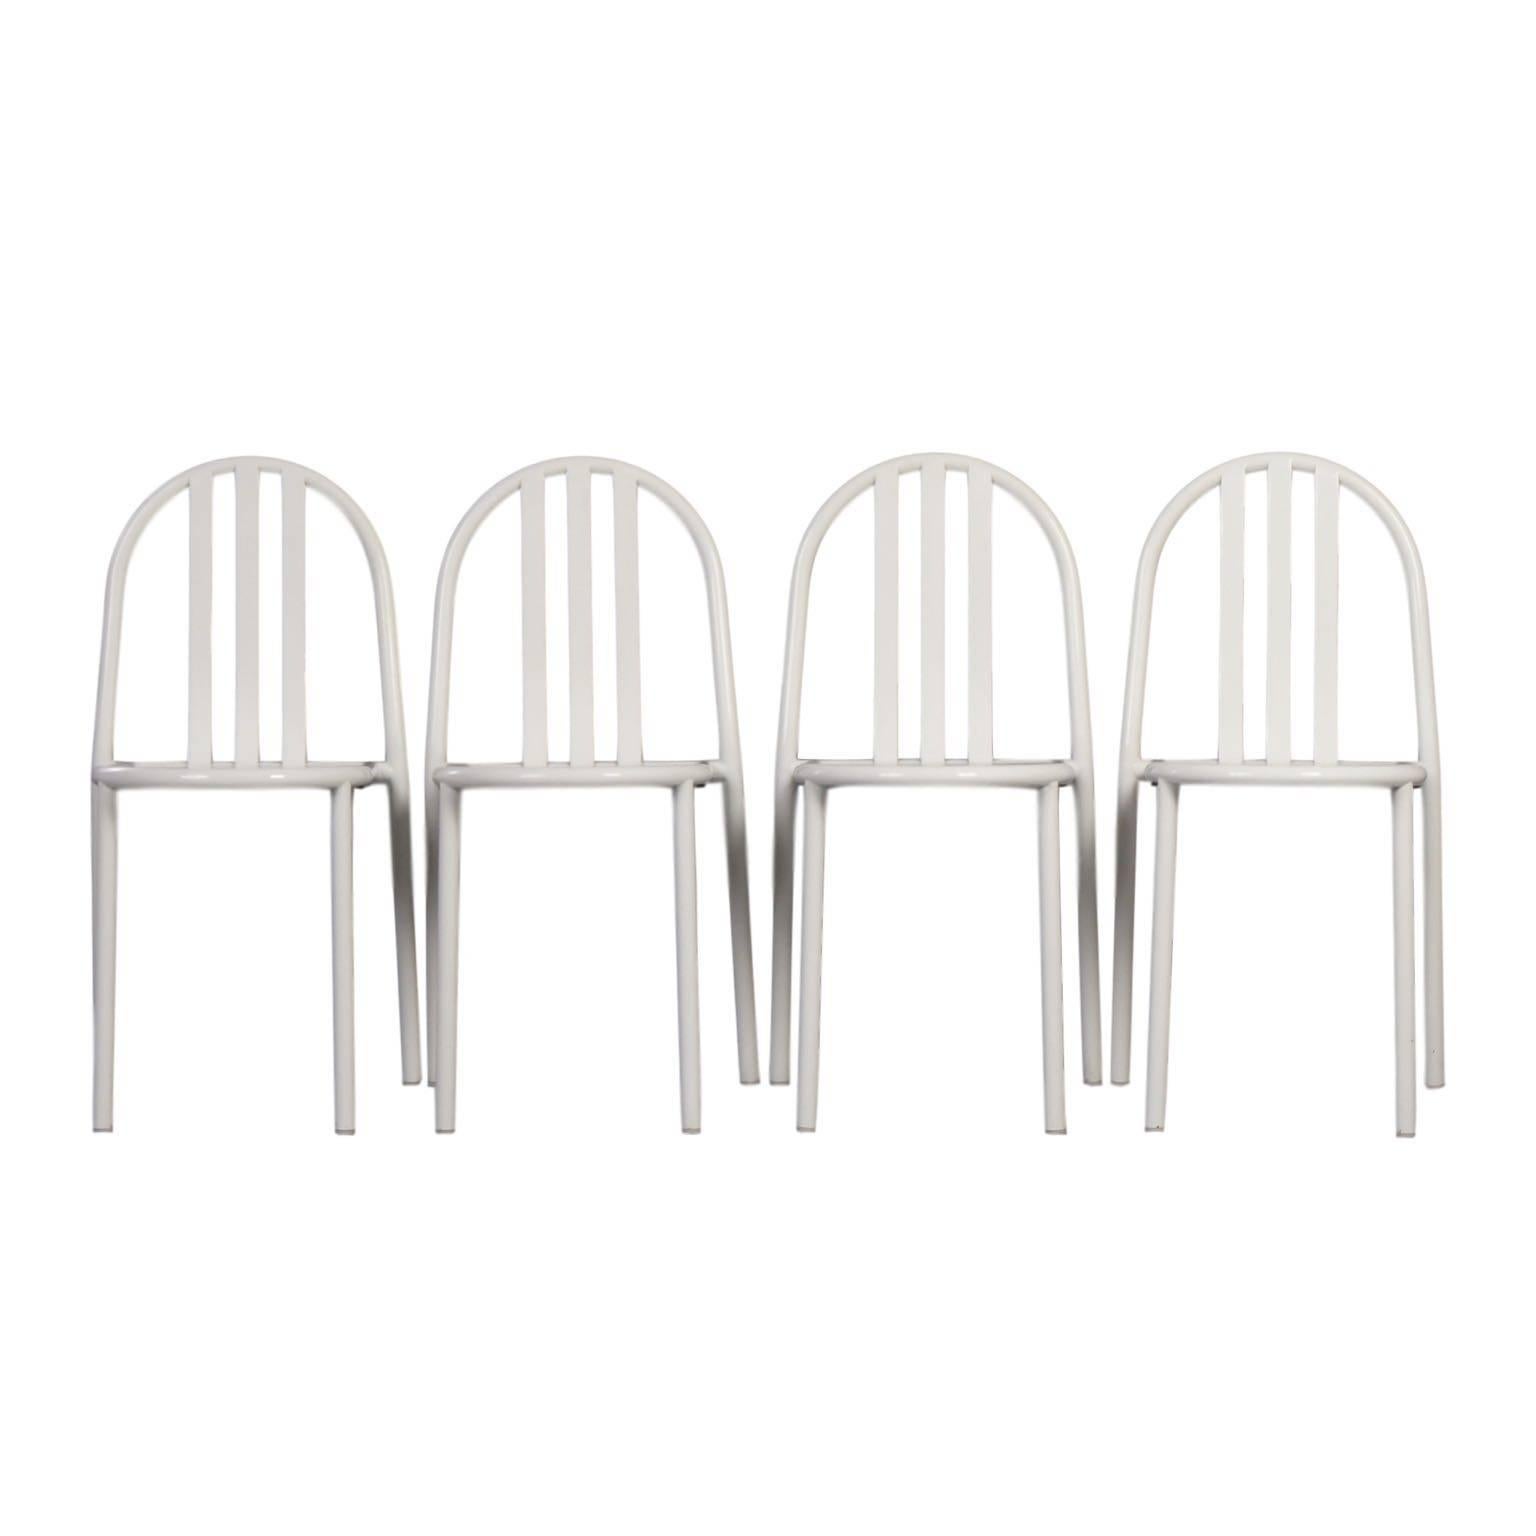 Four Stackable Bauhaus Chairs by Robert Mallet Stevens for Ecart International